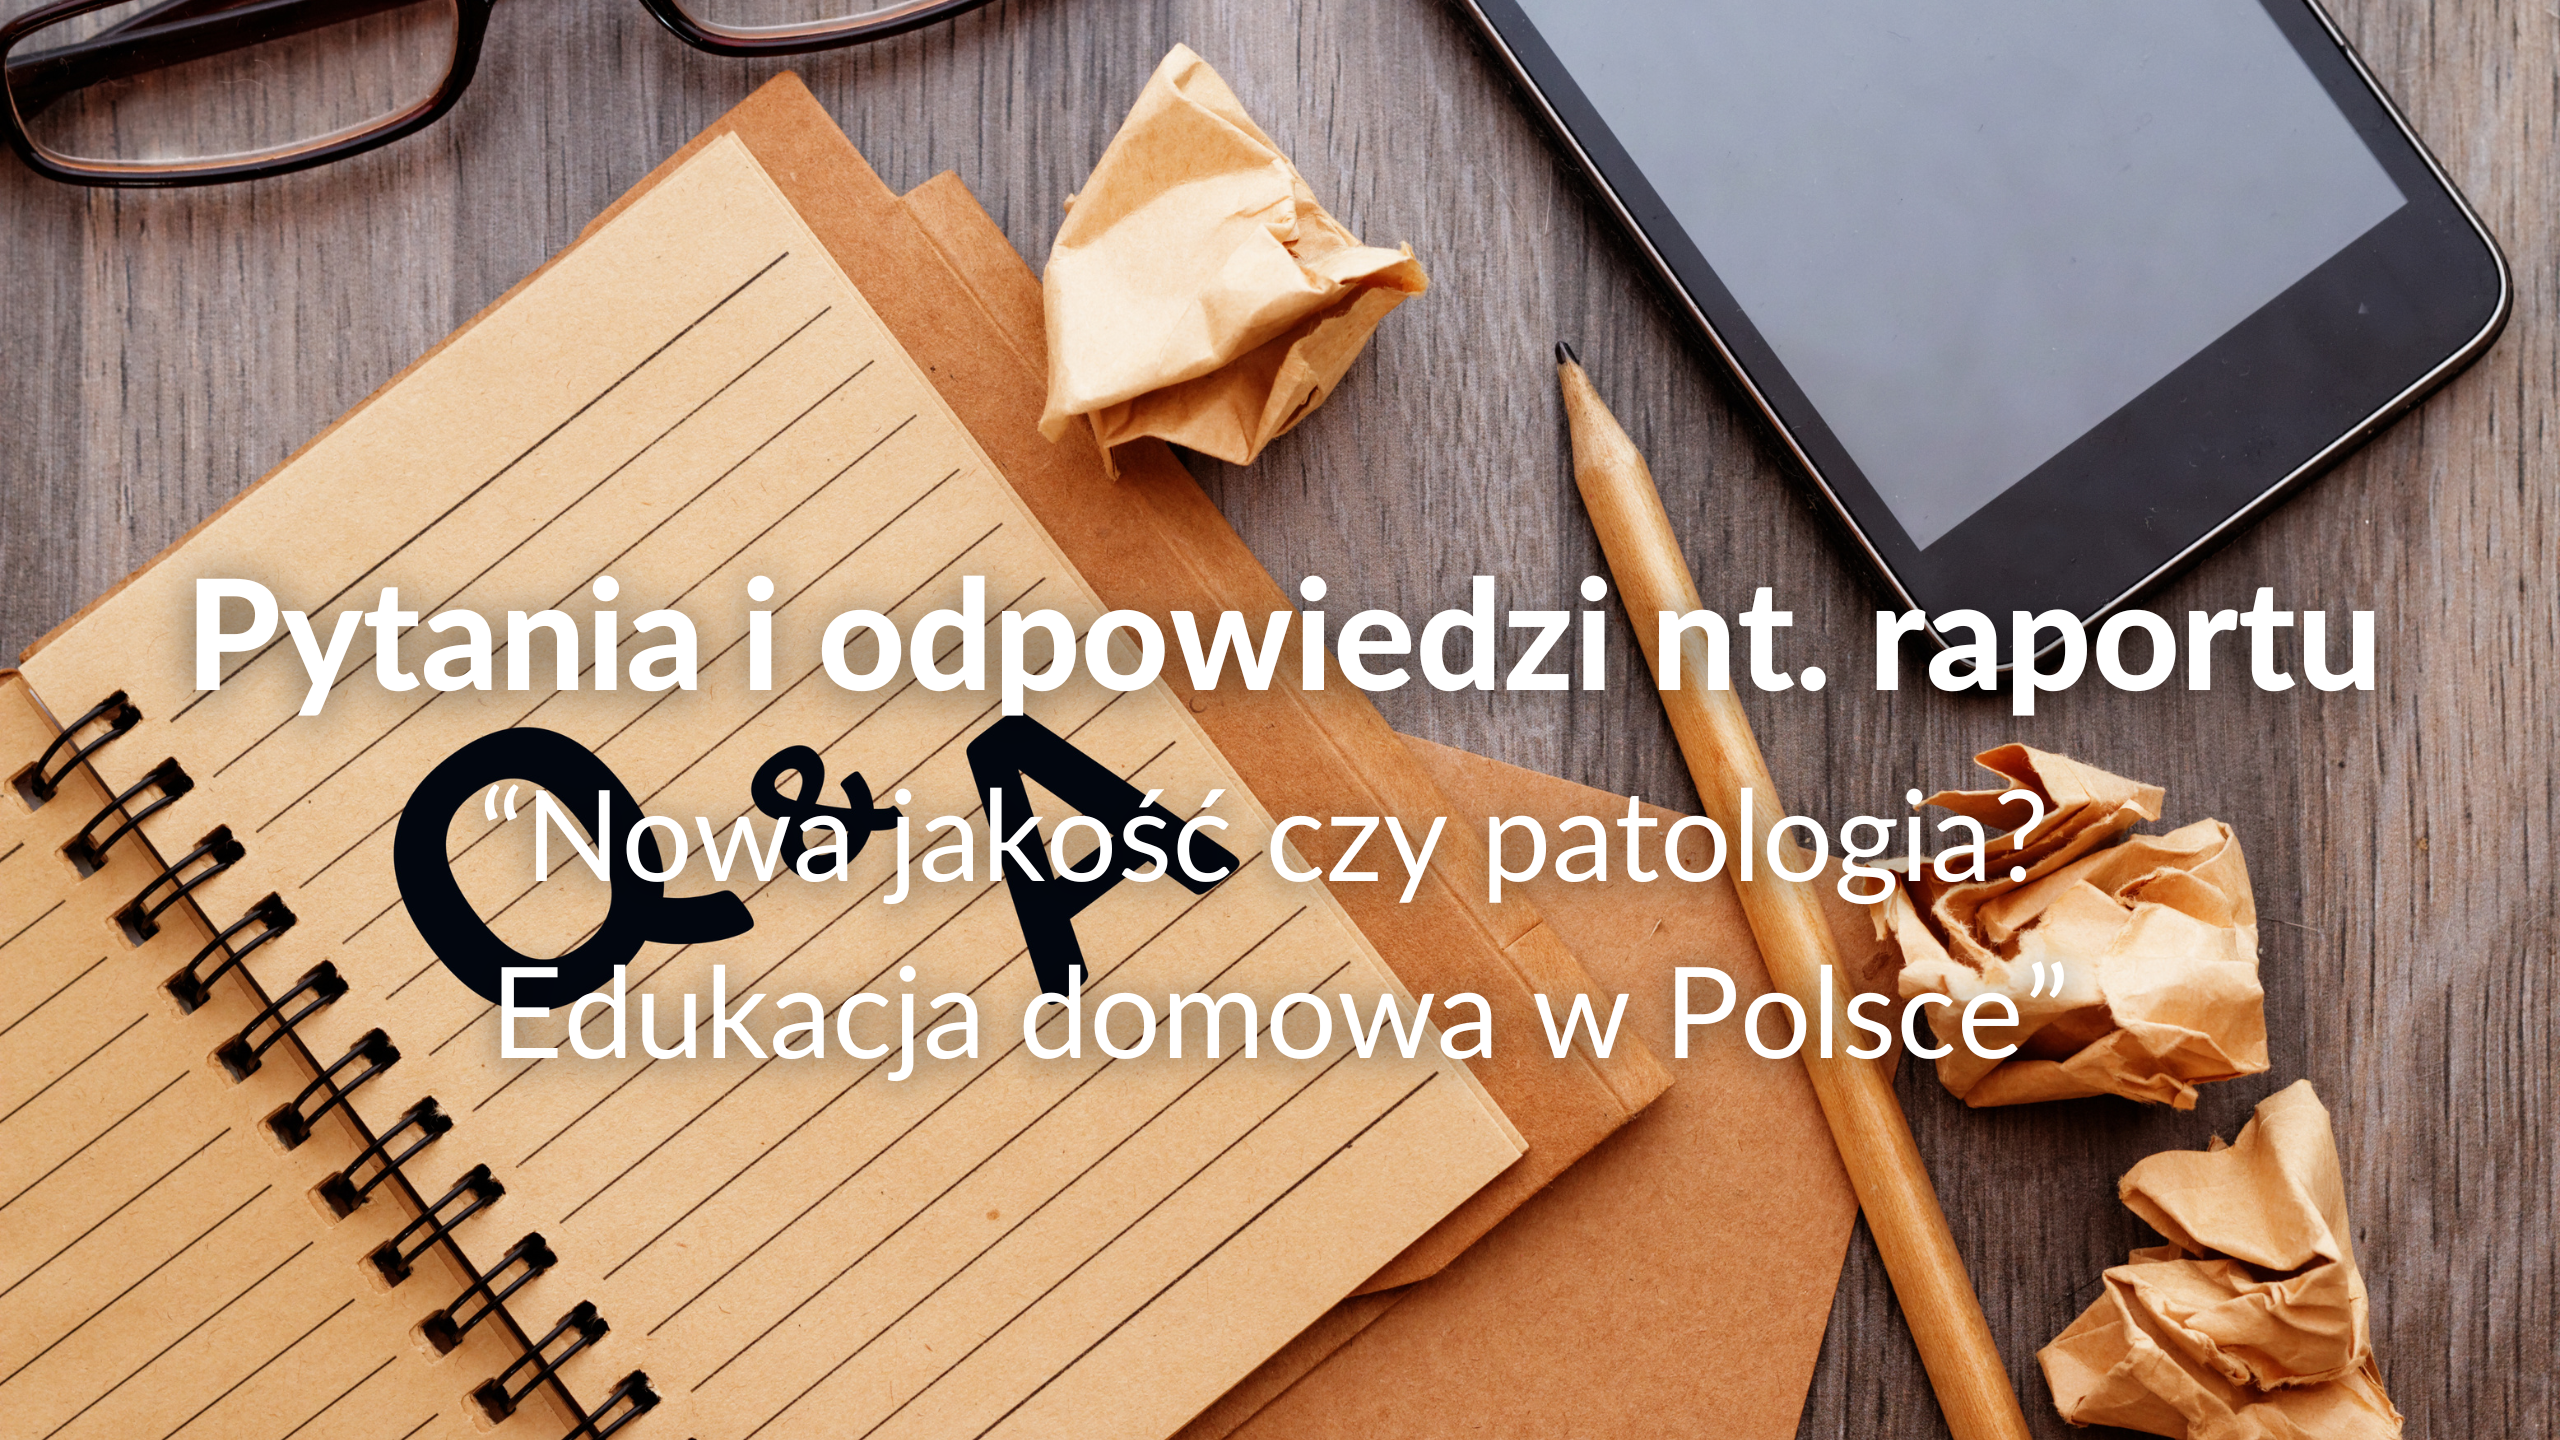 Pytania i odpowiedzi nt. raportu “Nowa jakość czy patologia? Edukacja domowa w Polsce”